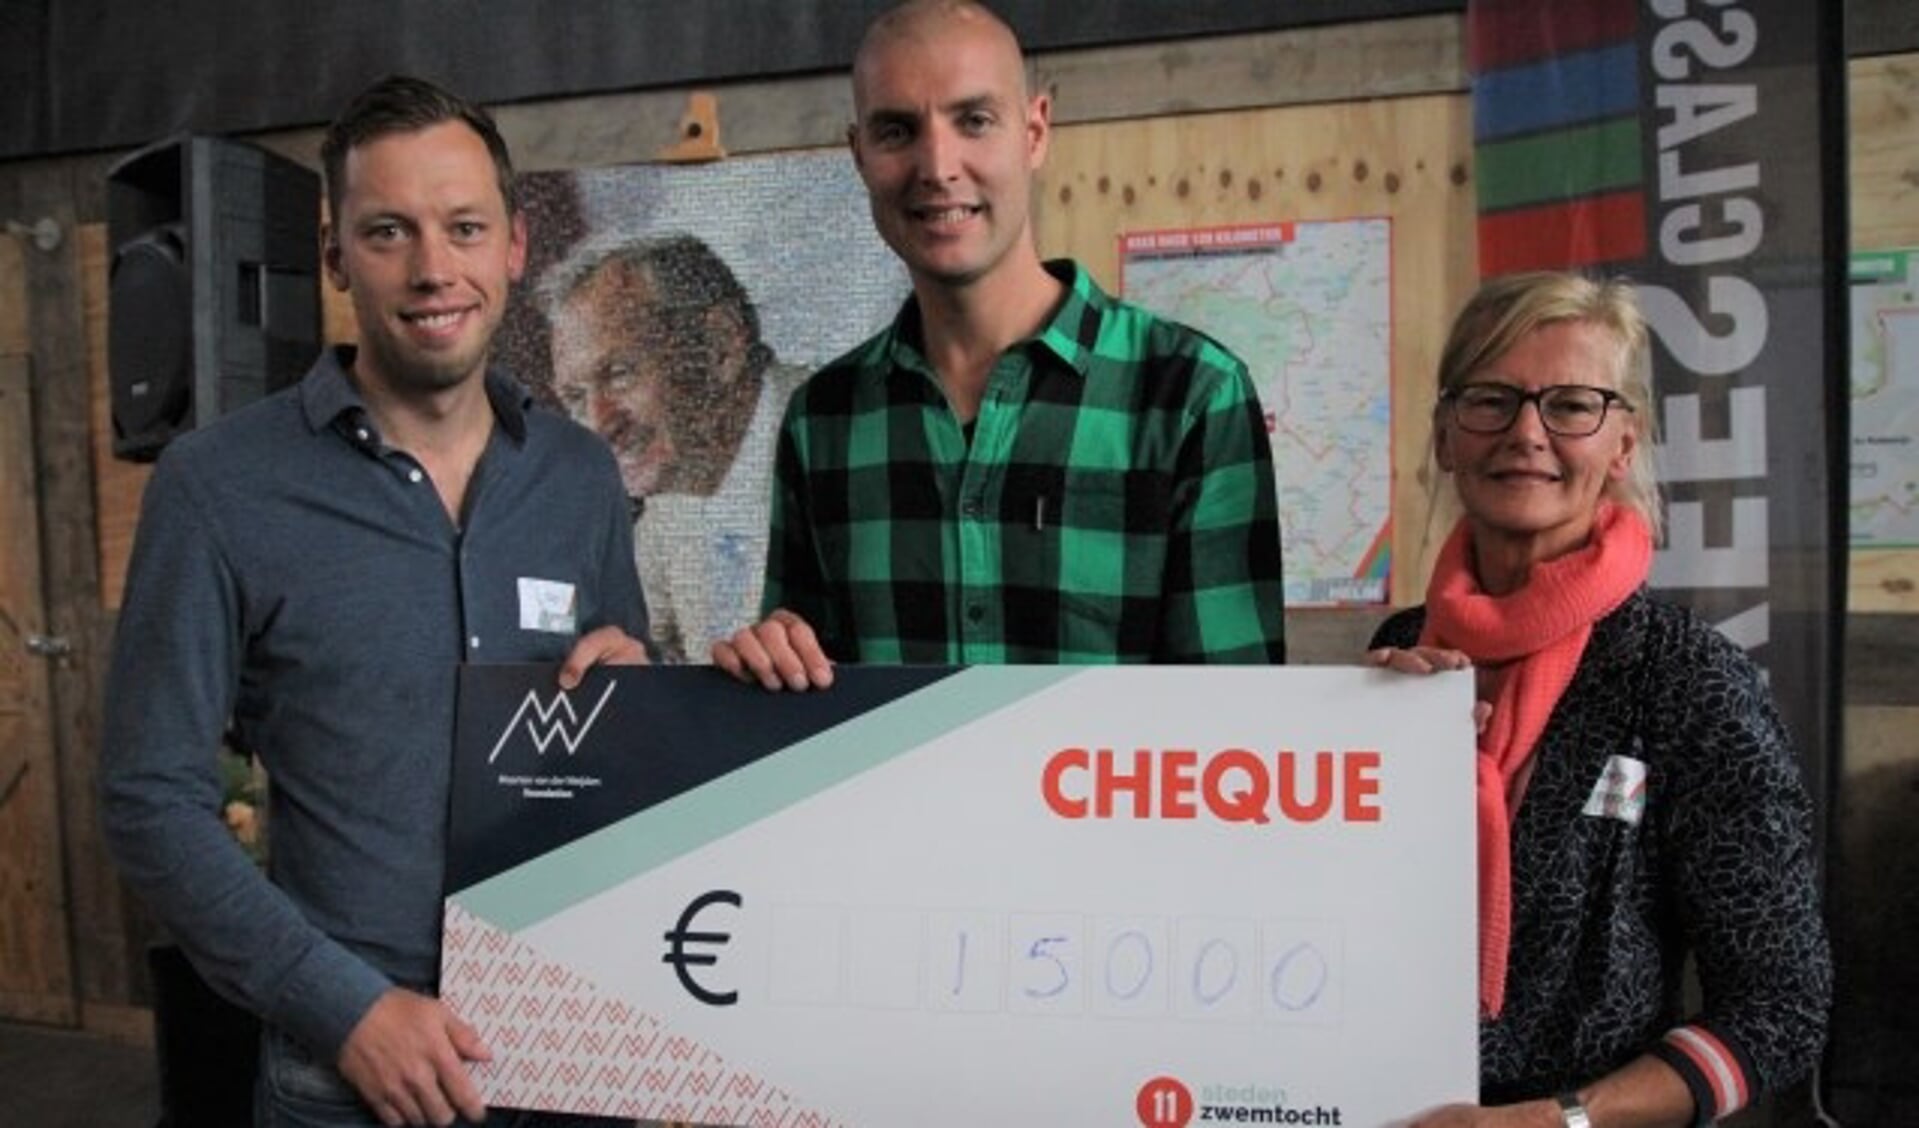 Marja en Gijs van der Helm overhandigden een cheque met 15.000 euro aan Maarten van der Weijden, die dit jaar als eerste mens op aarde de Friese Elfstedentocht helemaal zwom. 